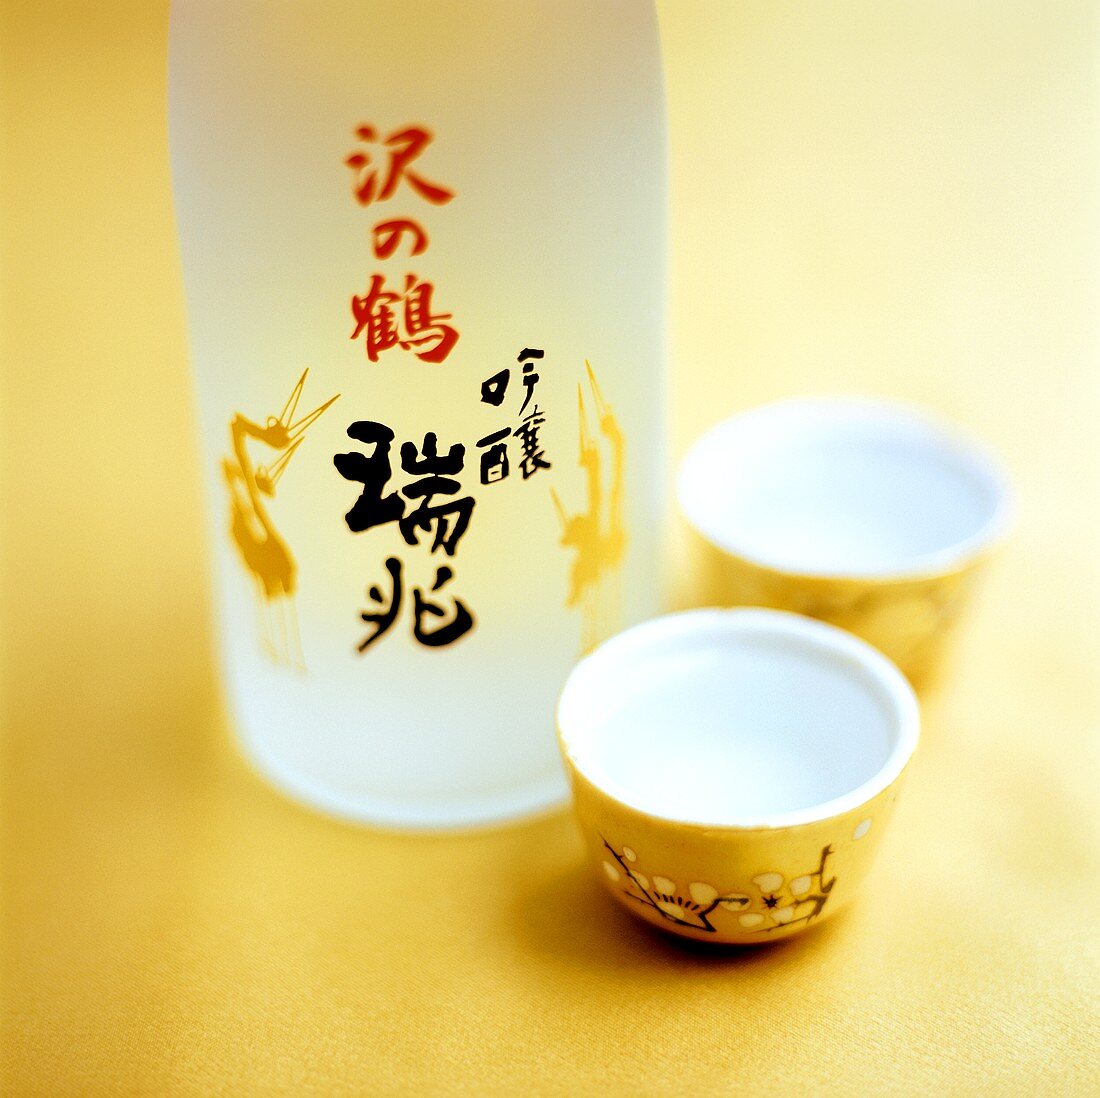 Sake in bottle and sake cups